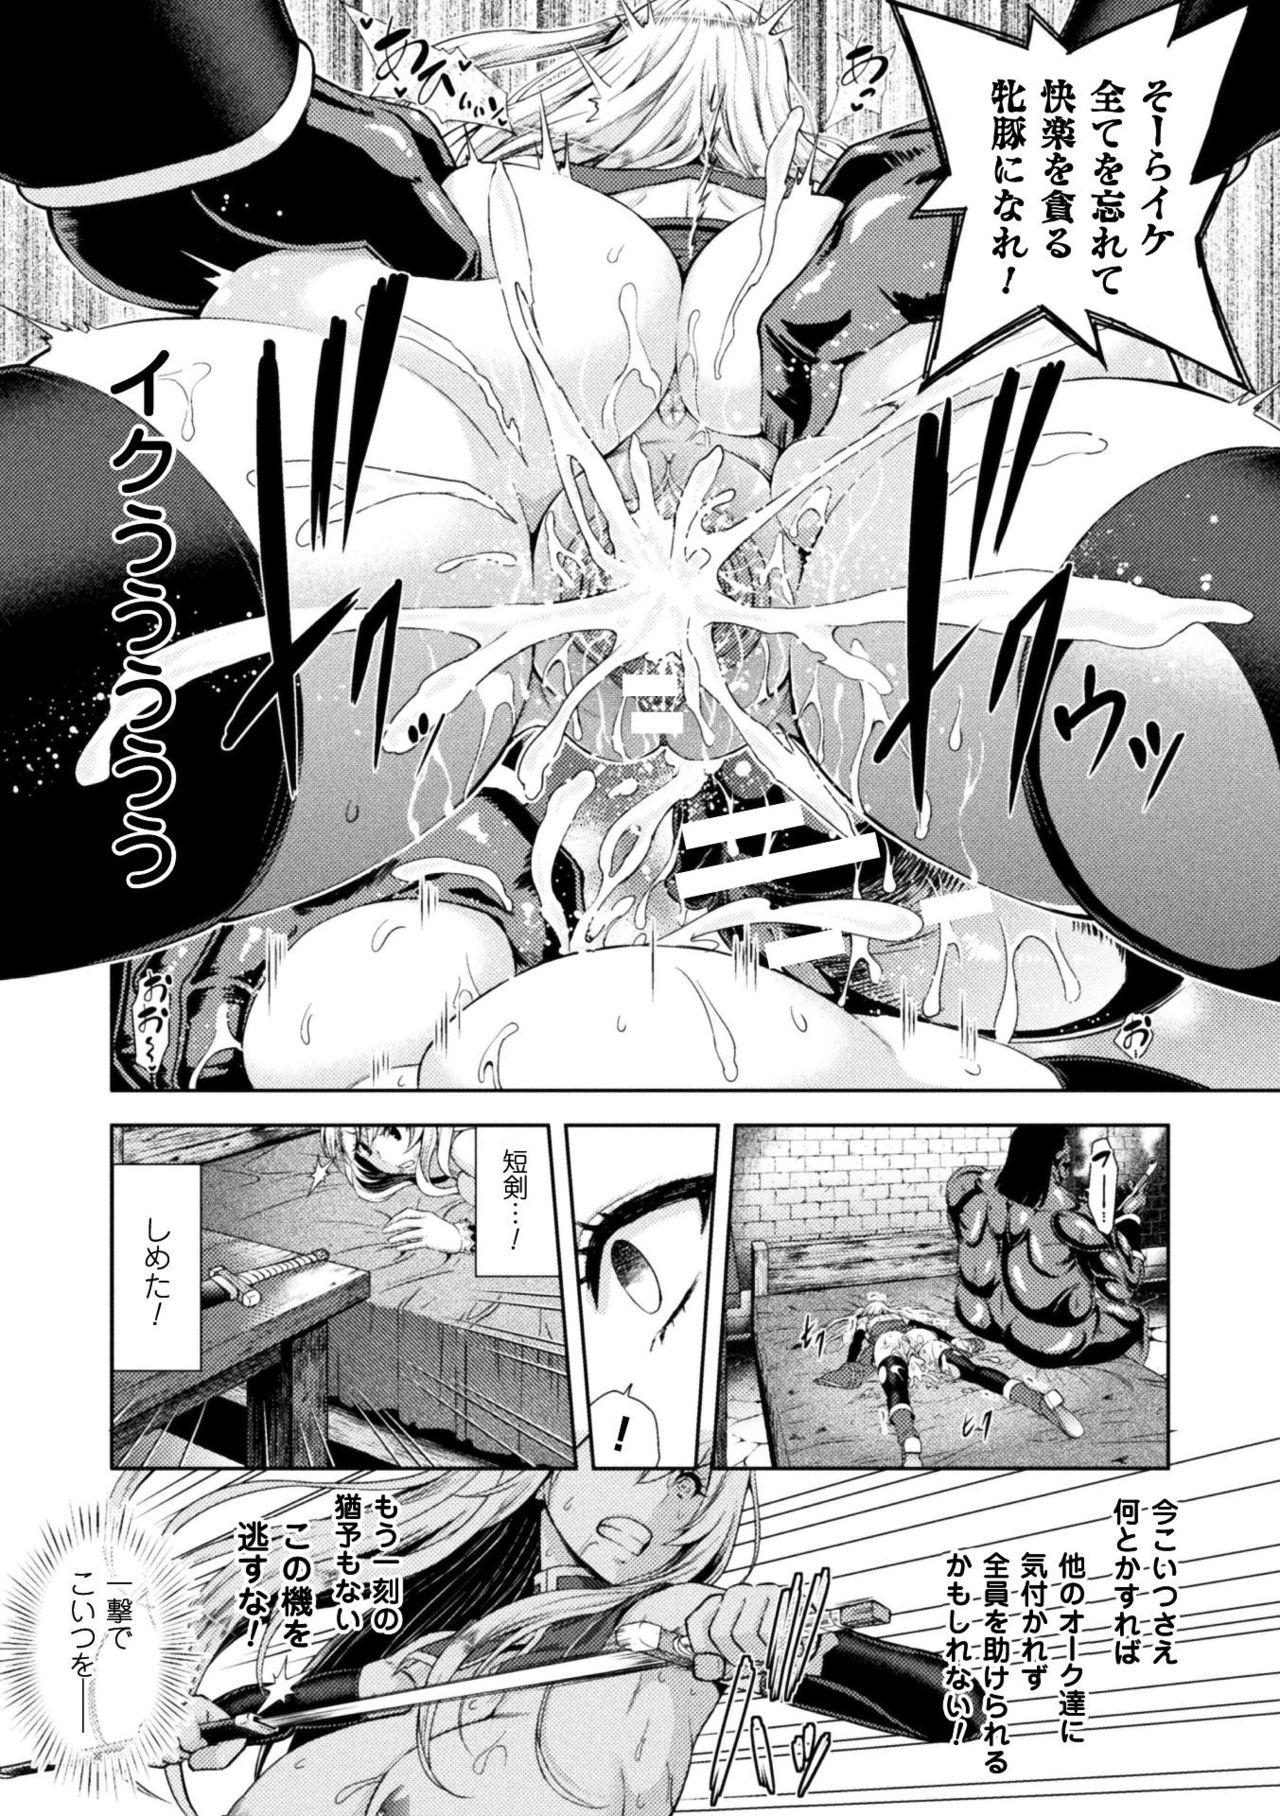 Seigi no Heroine Kangoku File Vol. 15 52